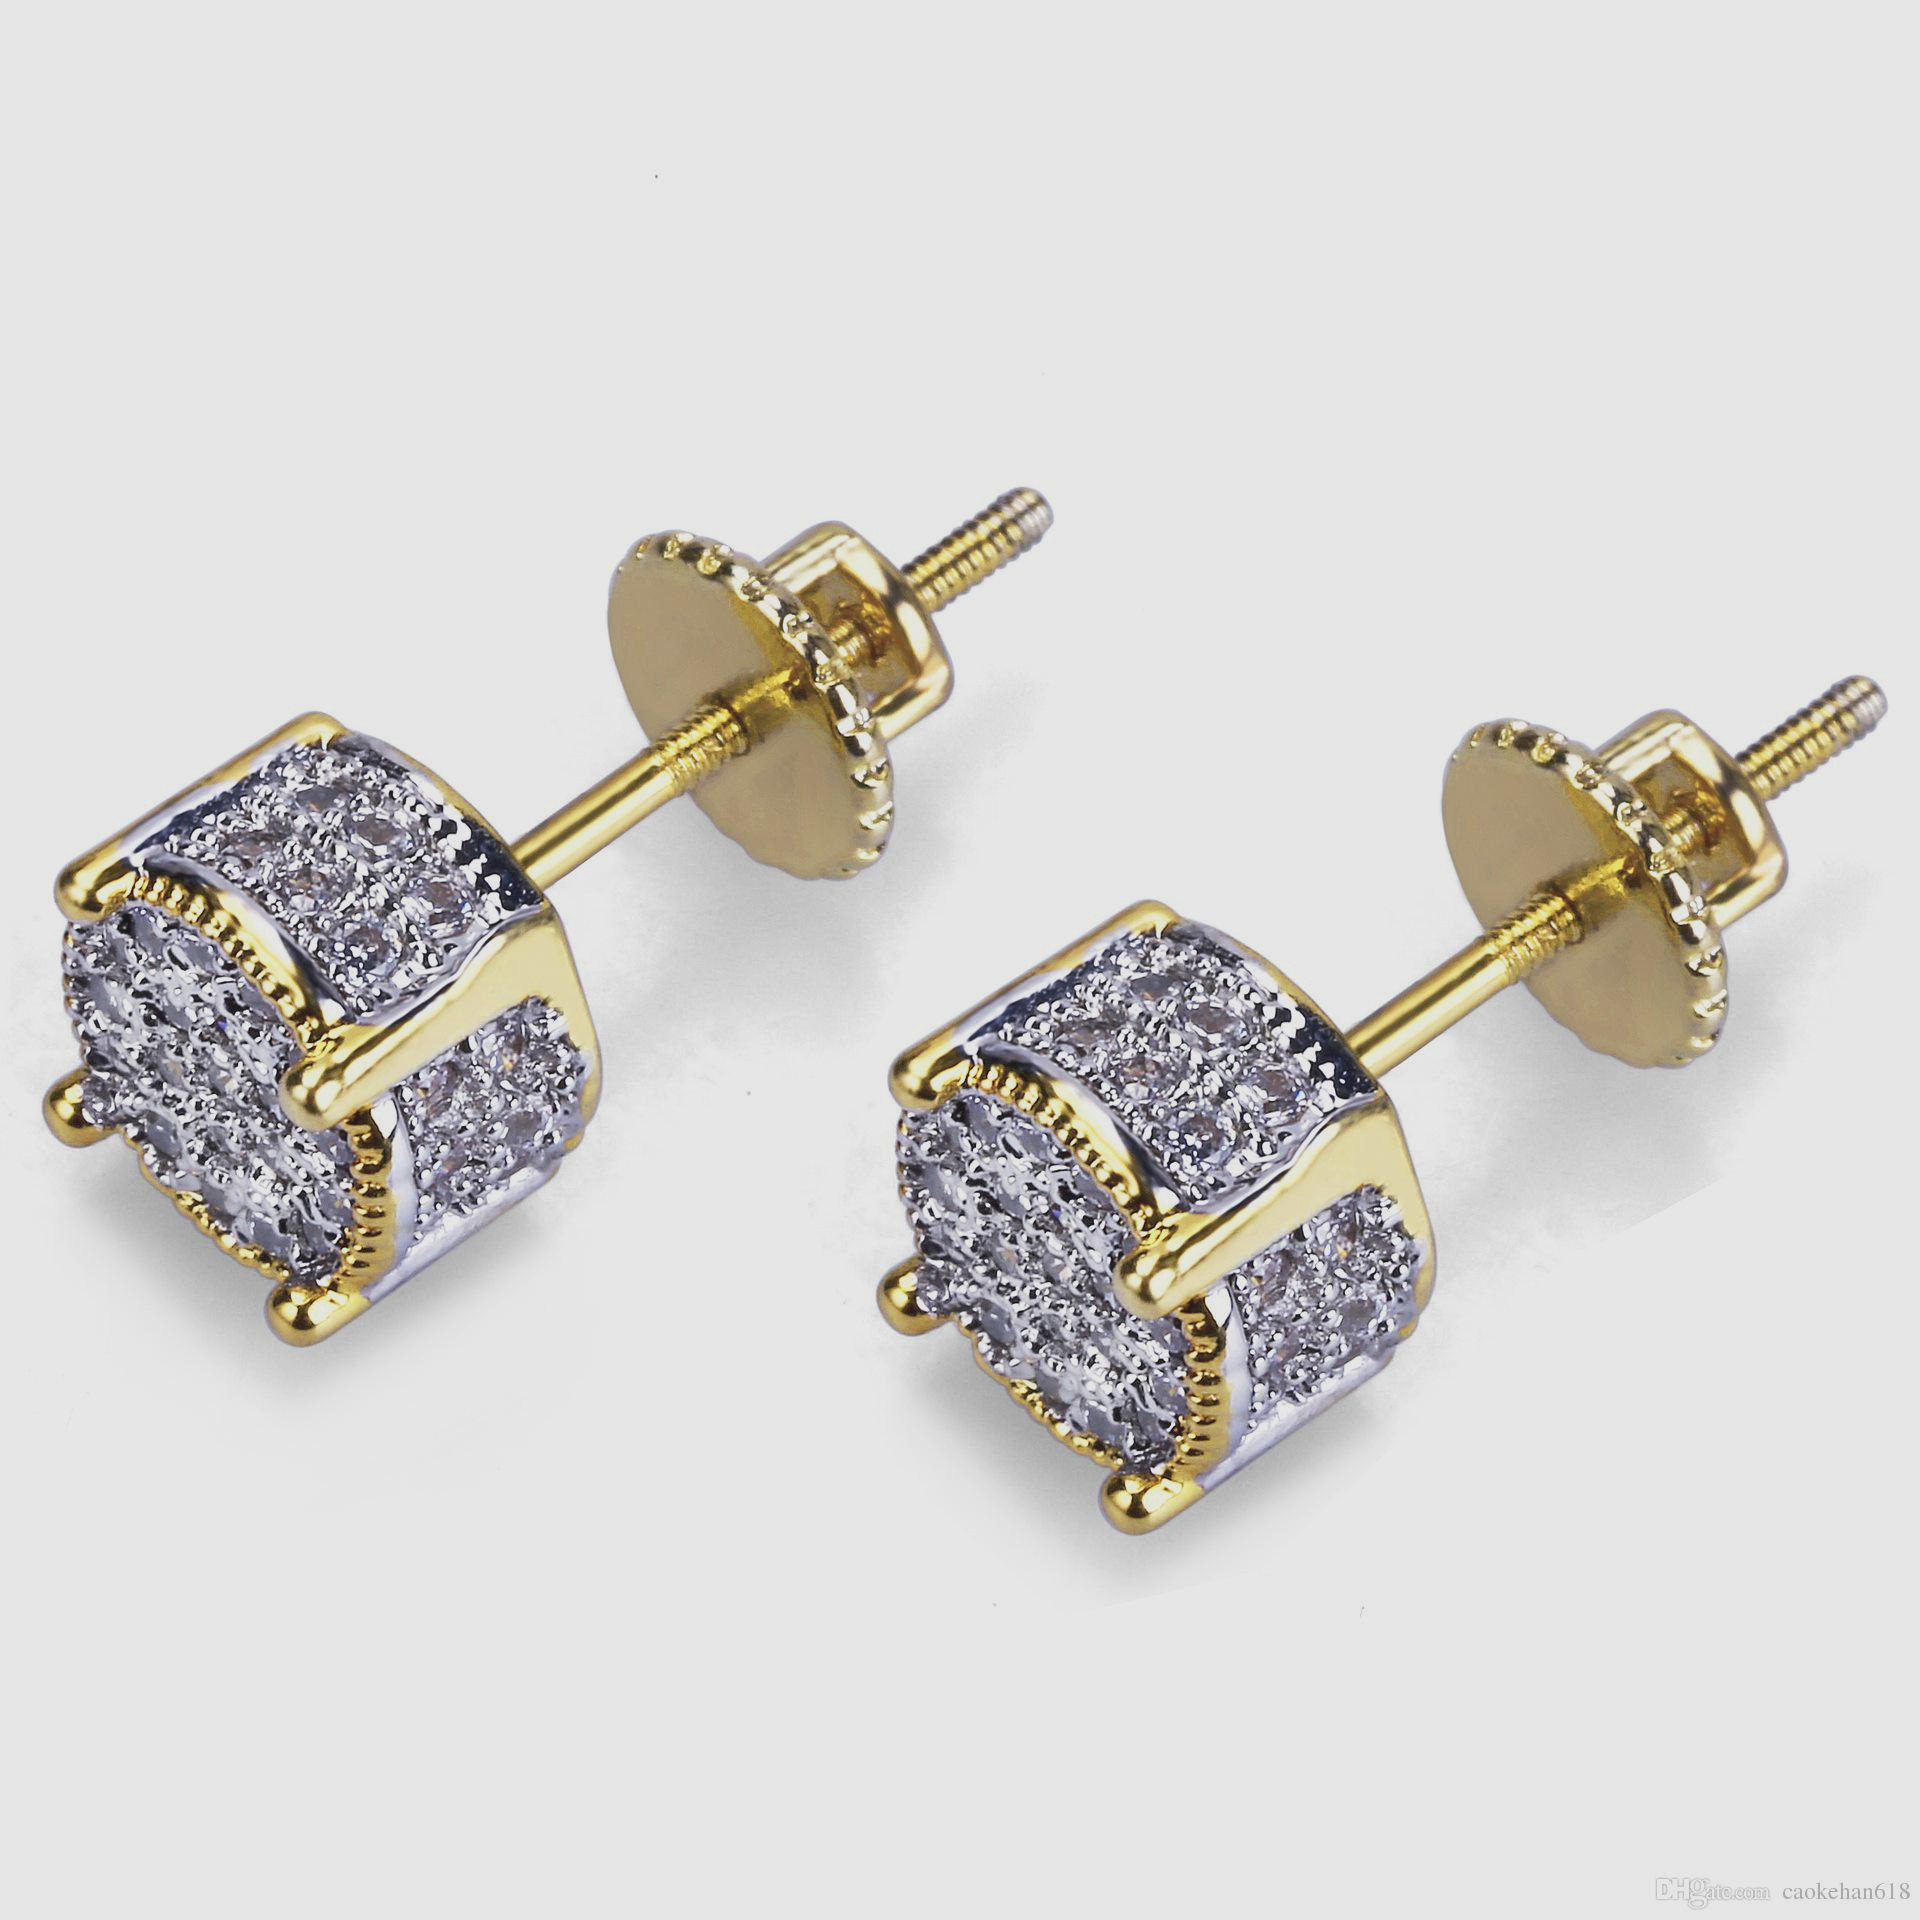 Diamond Earrings Studs Costco
 Diamond Stud Earrings Costco weddings jewelry rings